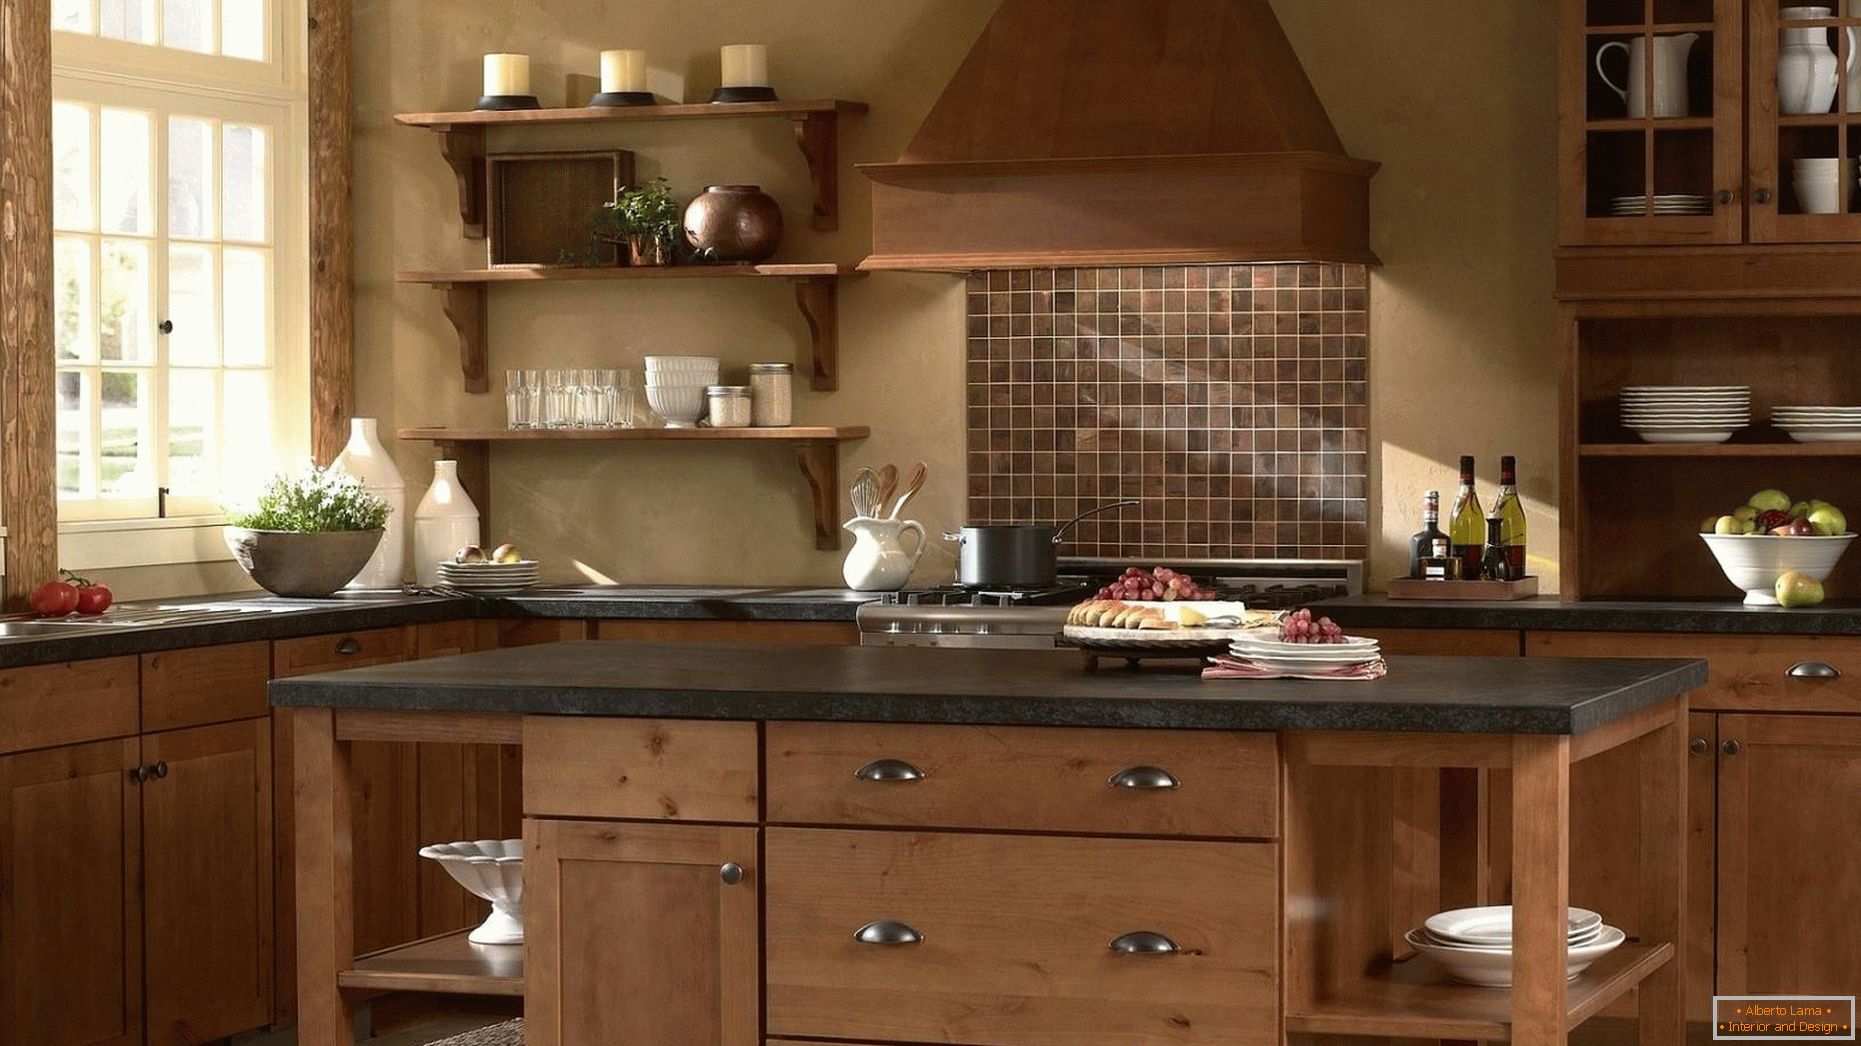 Le cucine in legno sono classiche!